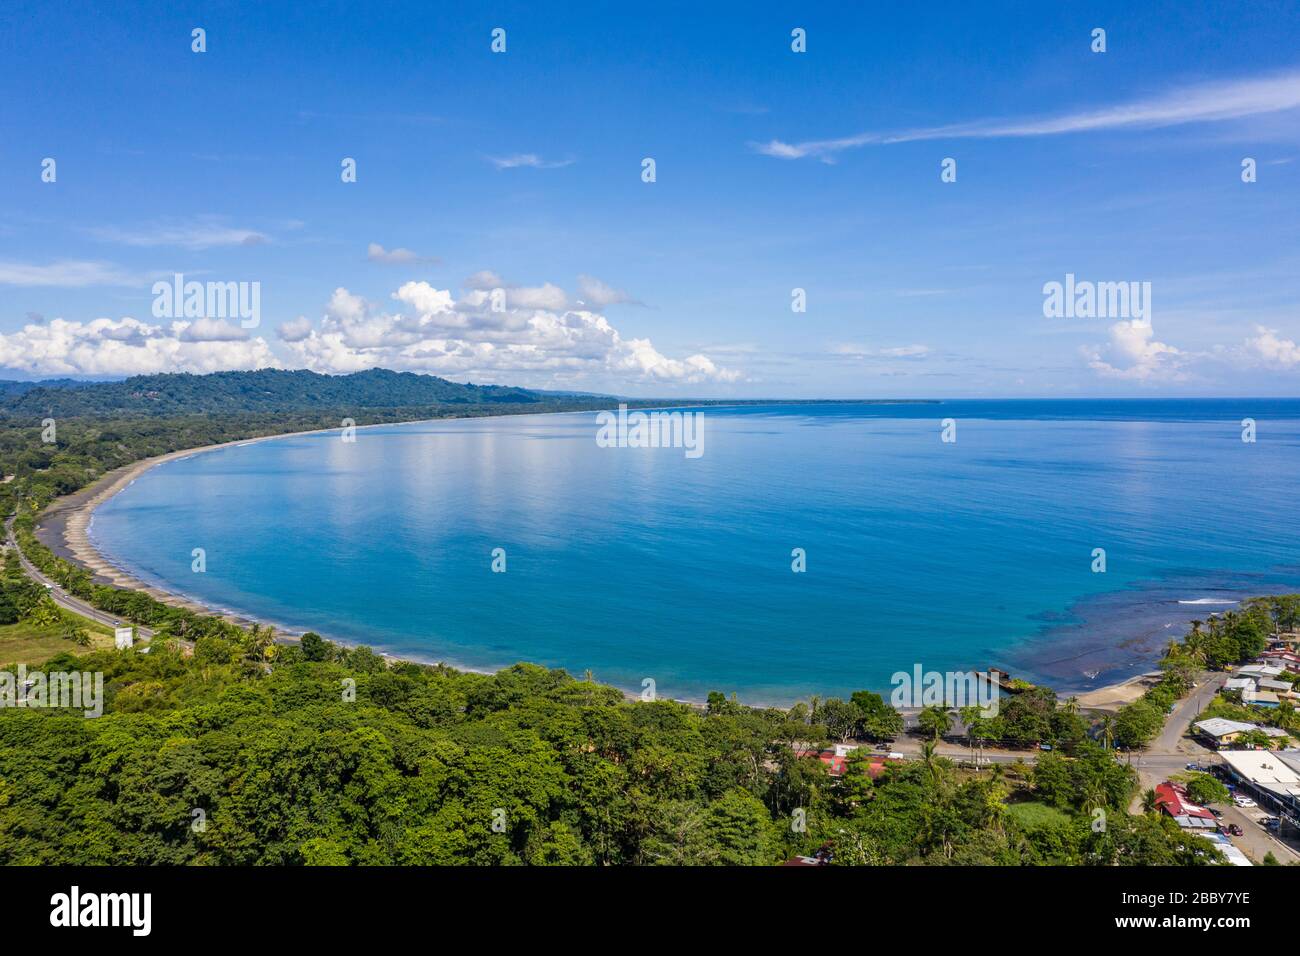 Vue aérienne face à Playa Negra et la ville côtière sud des Caraïbes de Puerto Viejo de Talamanca dans la province de Limón, Costa Rica. Banque D'Images